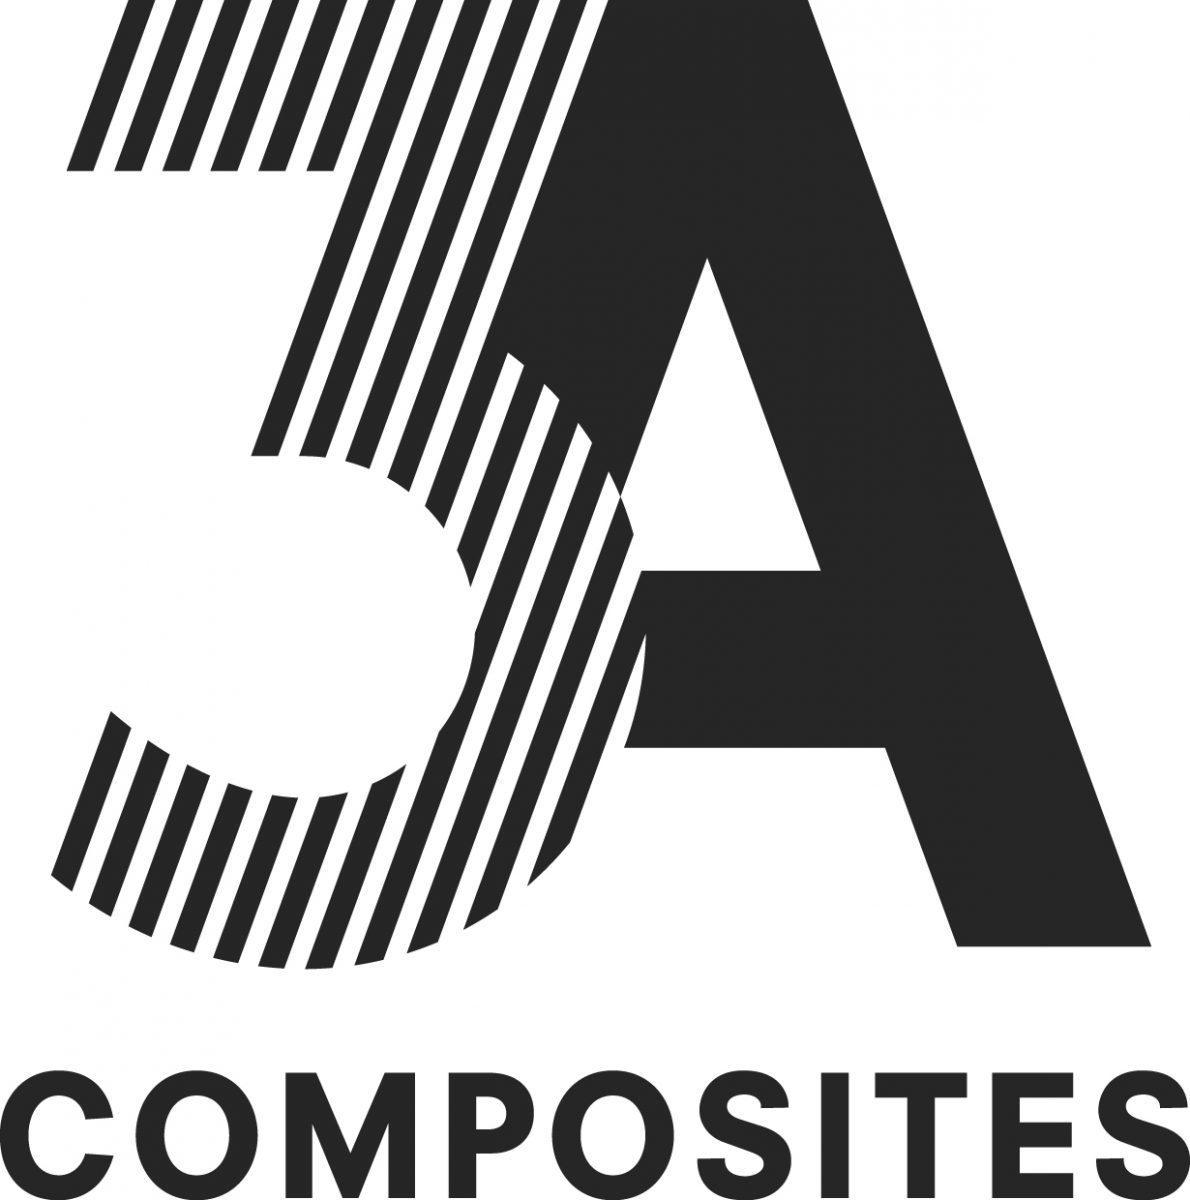 3A Composites Alucobond panneau composite aluminium aluminium composite